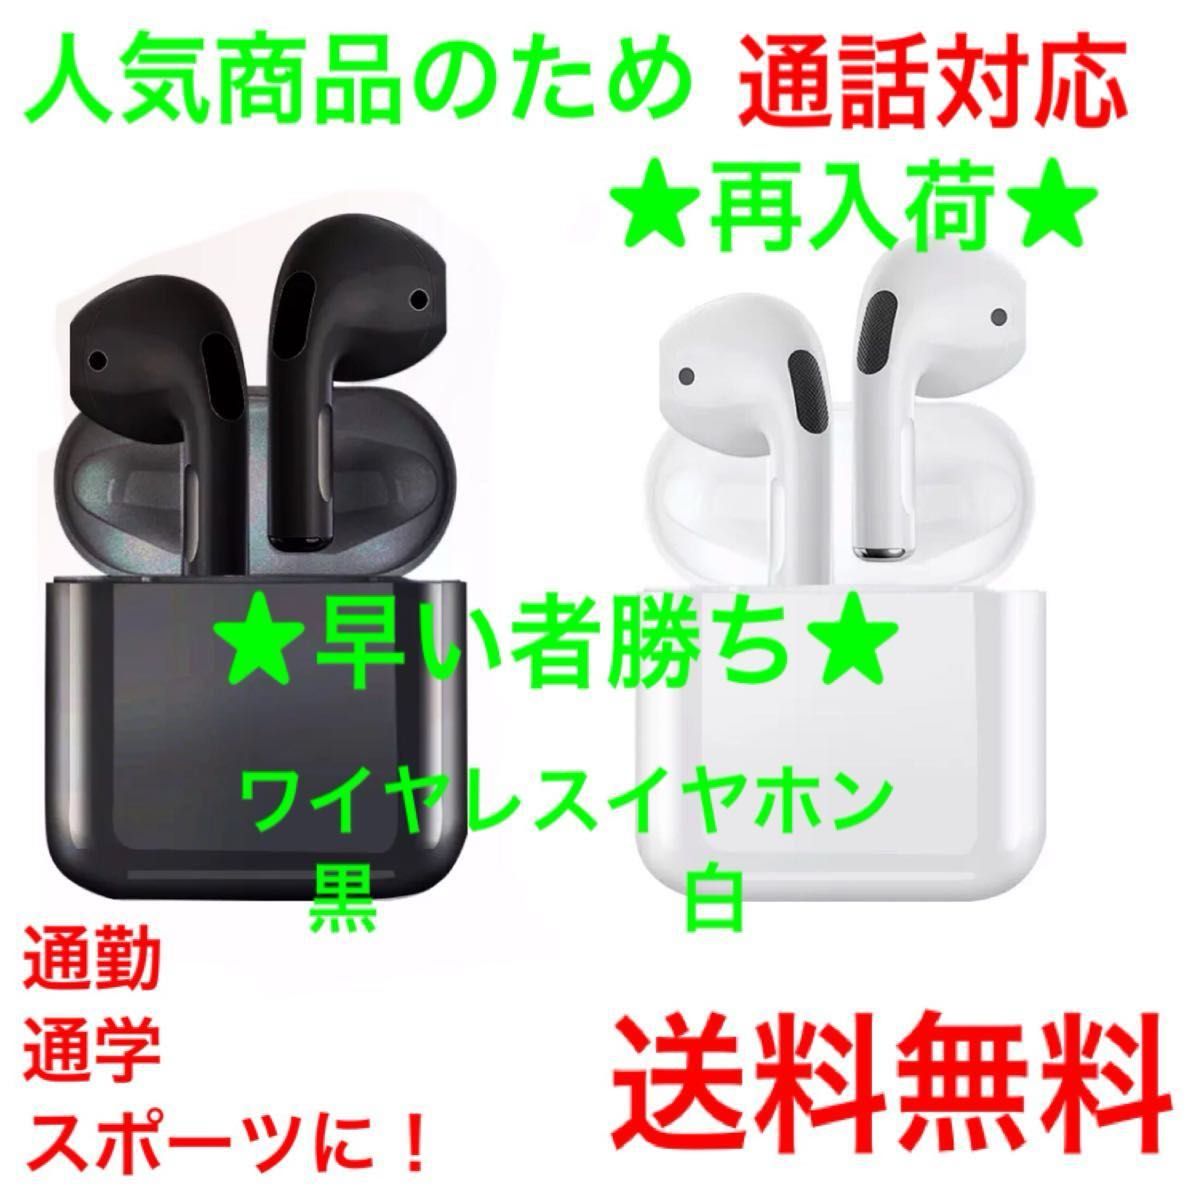 土日セール 通話可能ワイヤレスイヤホン Bluetooth AirPods iPhone